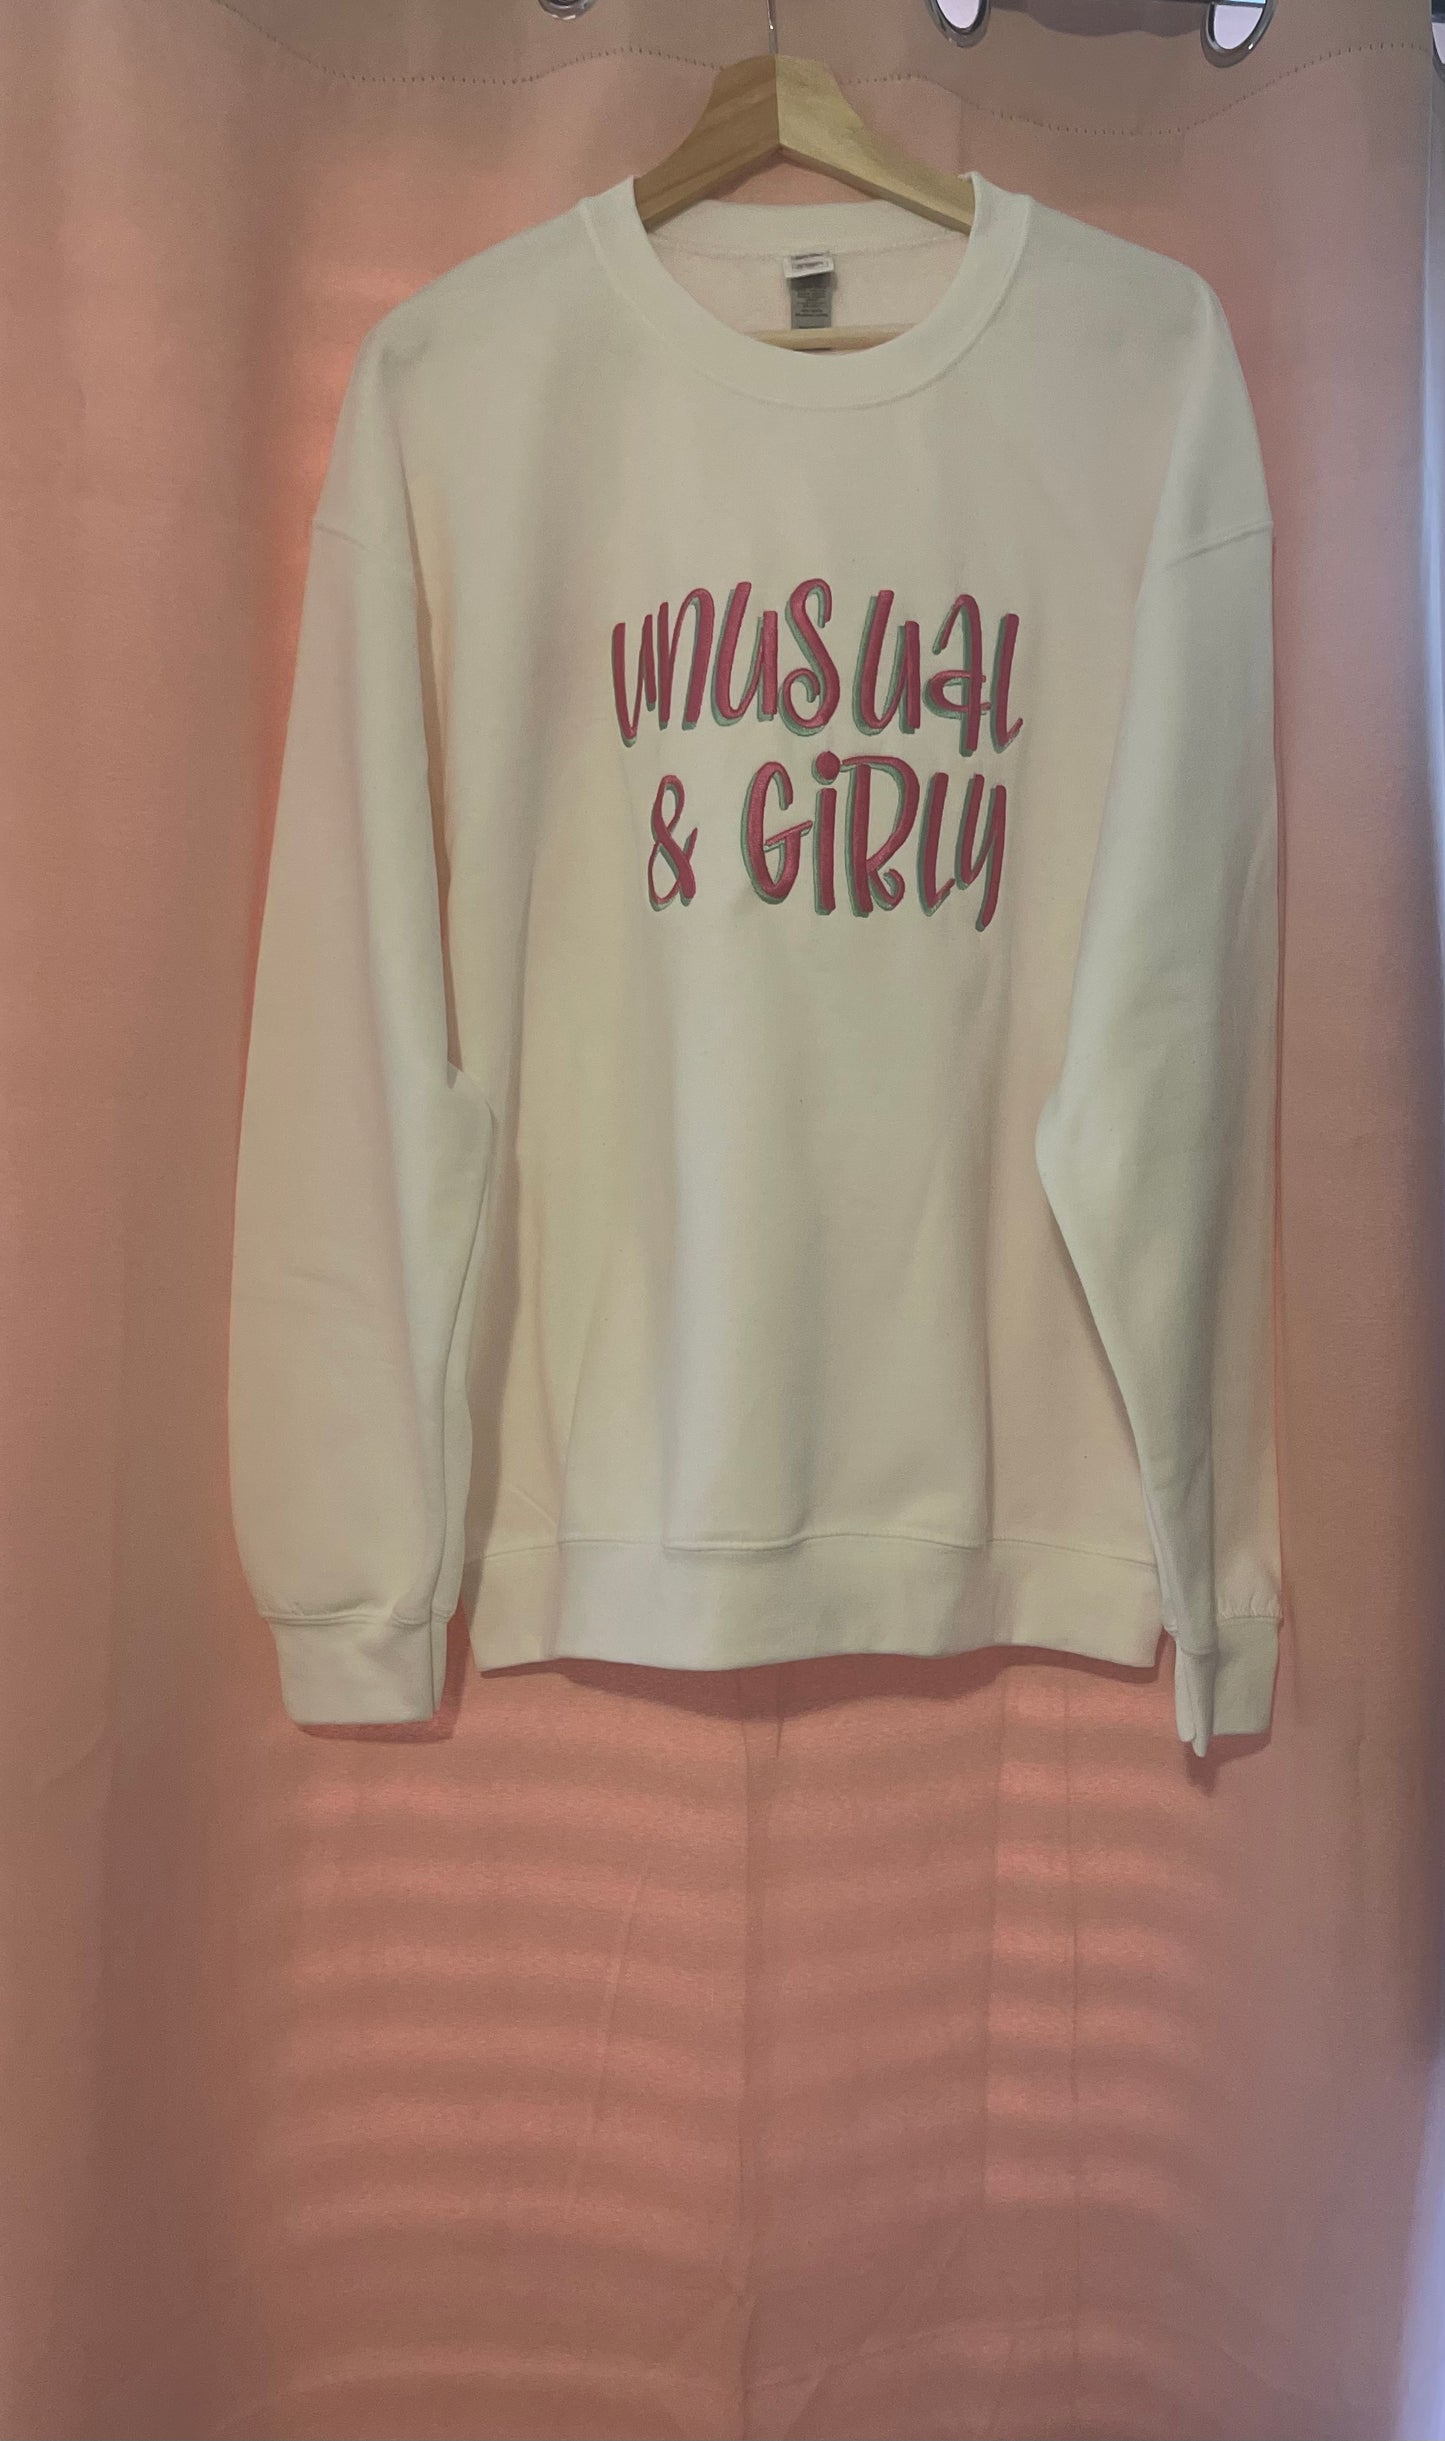 Unusual & Girly Sweatshirt